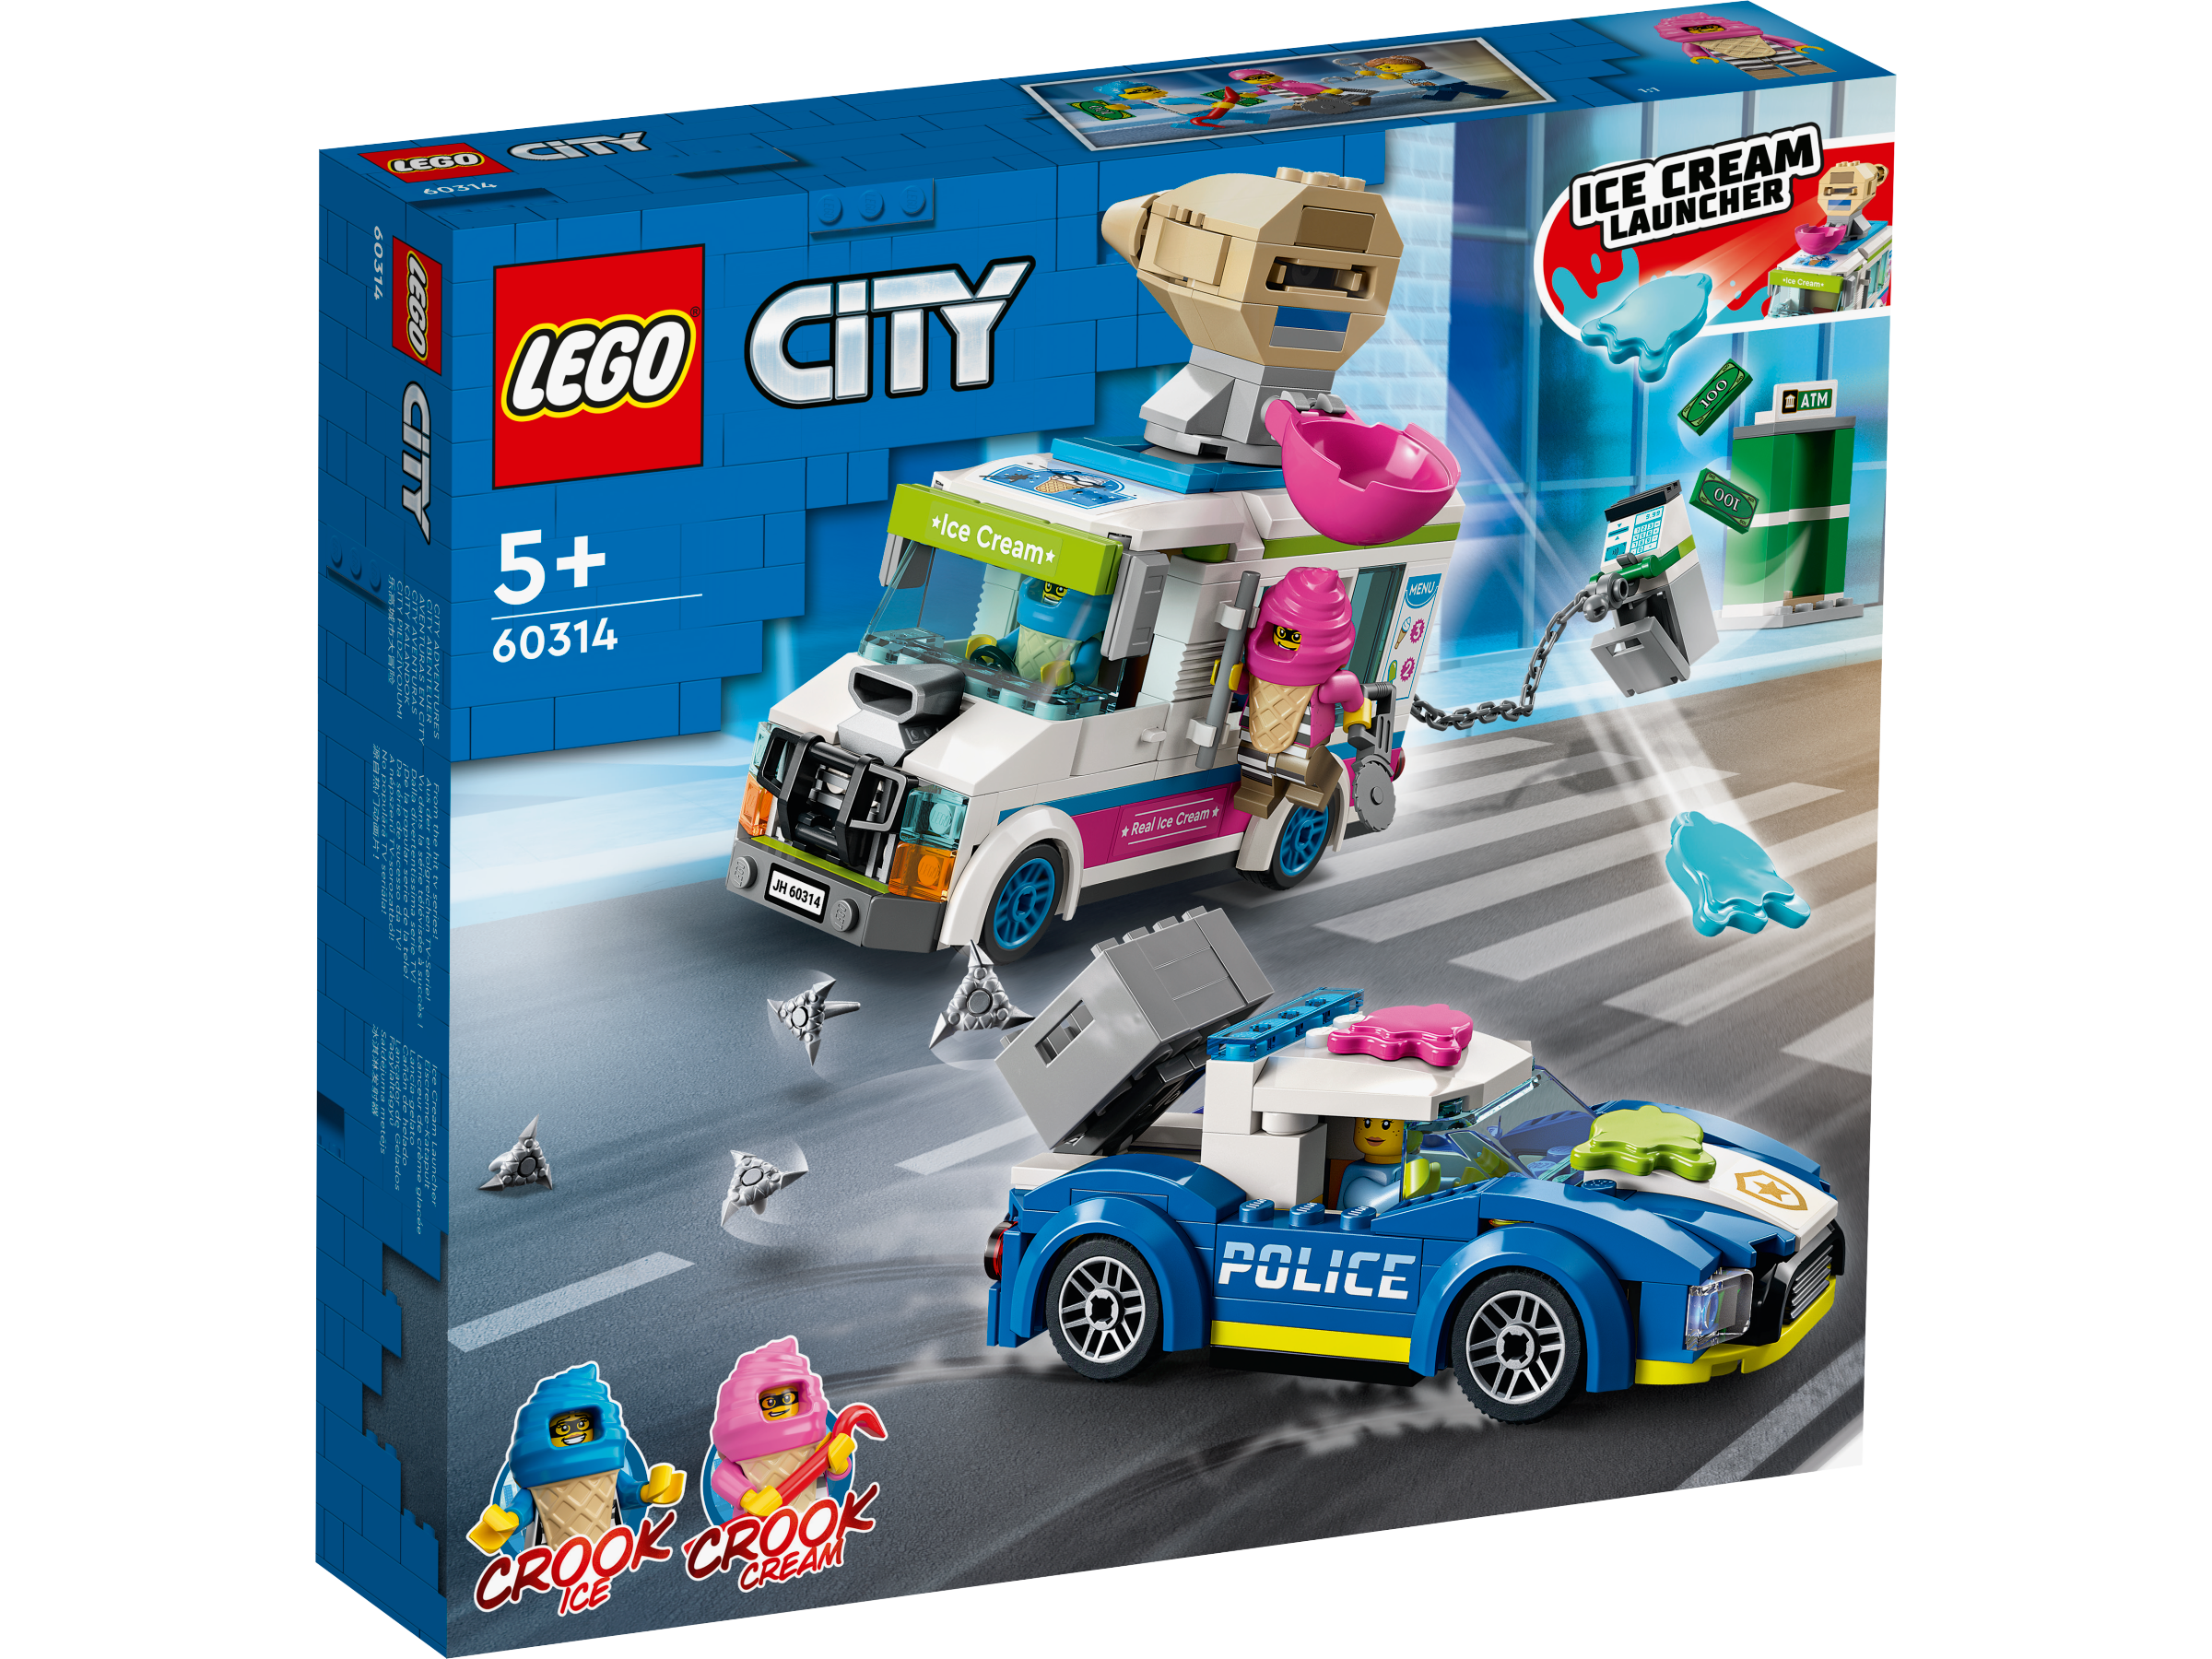 Lego 60314 Ice Cream Truck Police